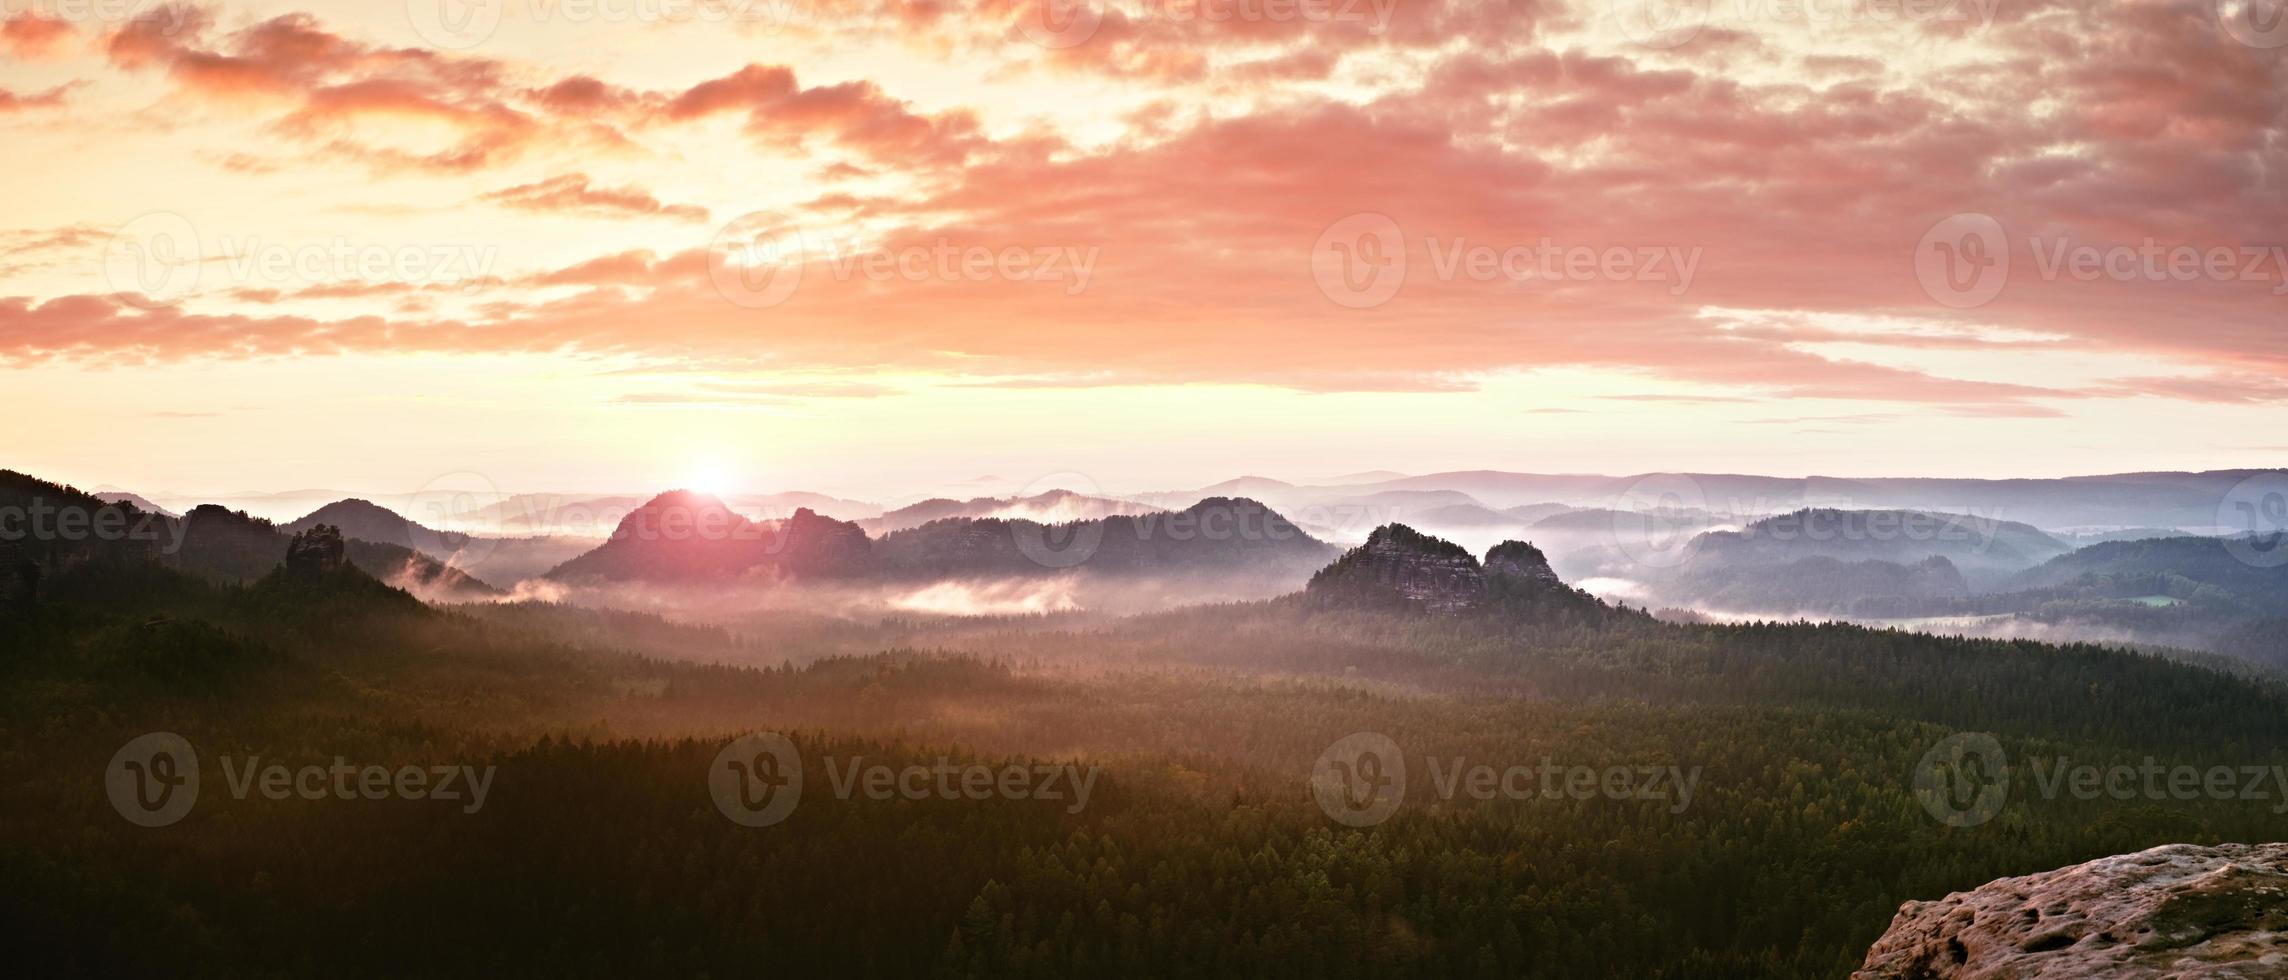 panorama da paisagem enevoada vermelha nas montanhas. nascer do sol fantástico e sonhador foto